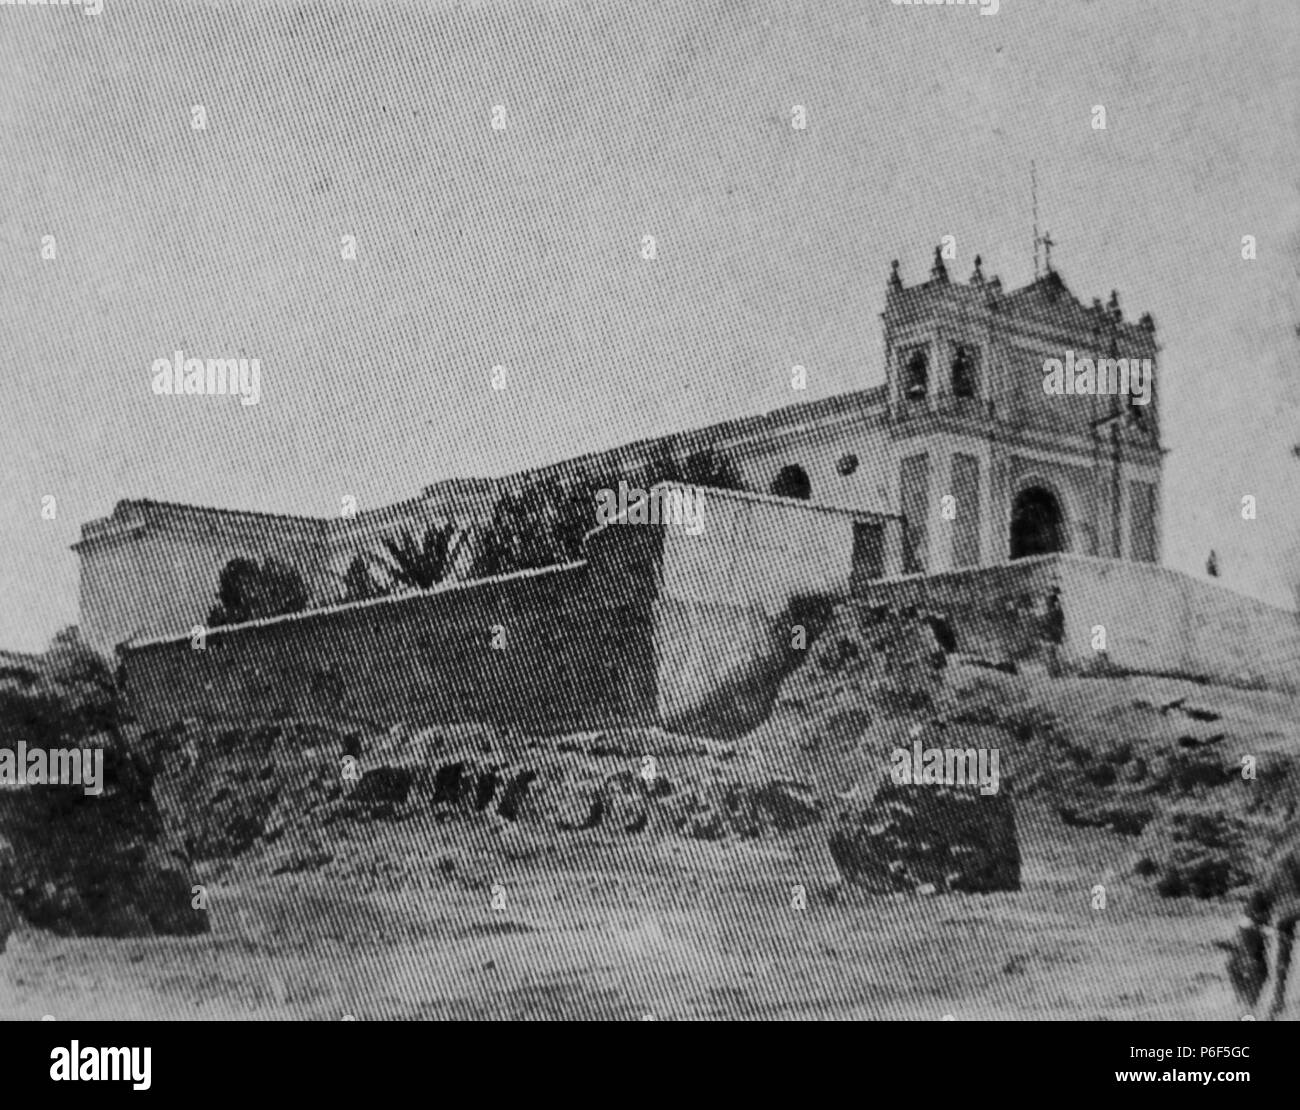 Español: Iglesia de 'El Calvario' de la Ciudad de Guatemala a principios del  siglo XX. 1900 40 ElCalvarioGuatemala1910 Stock Photo - Alamy